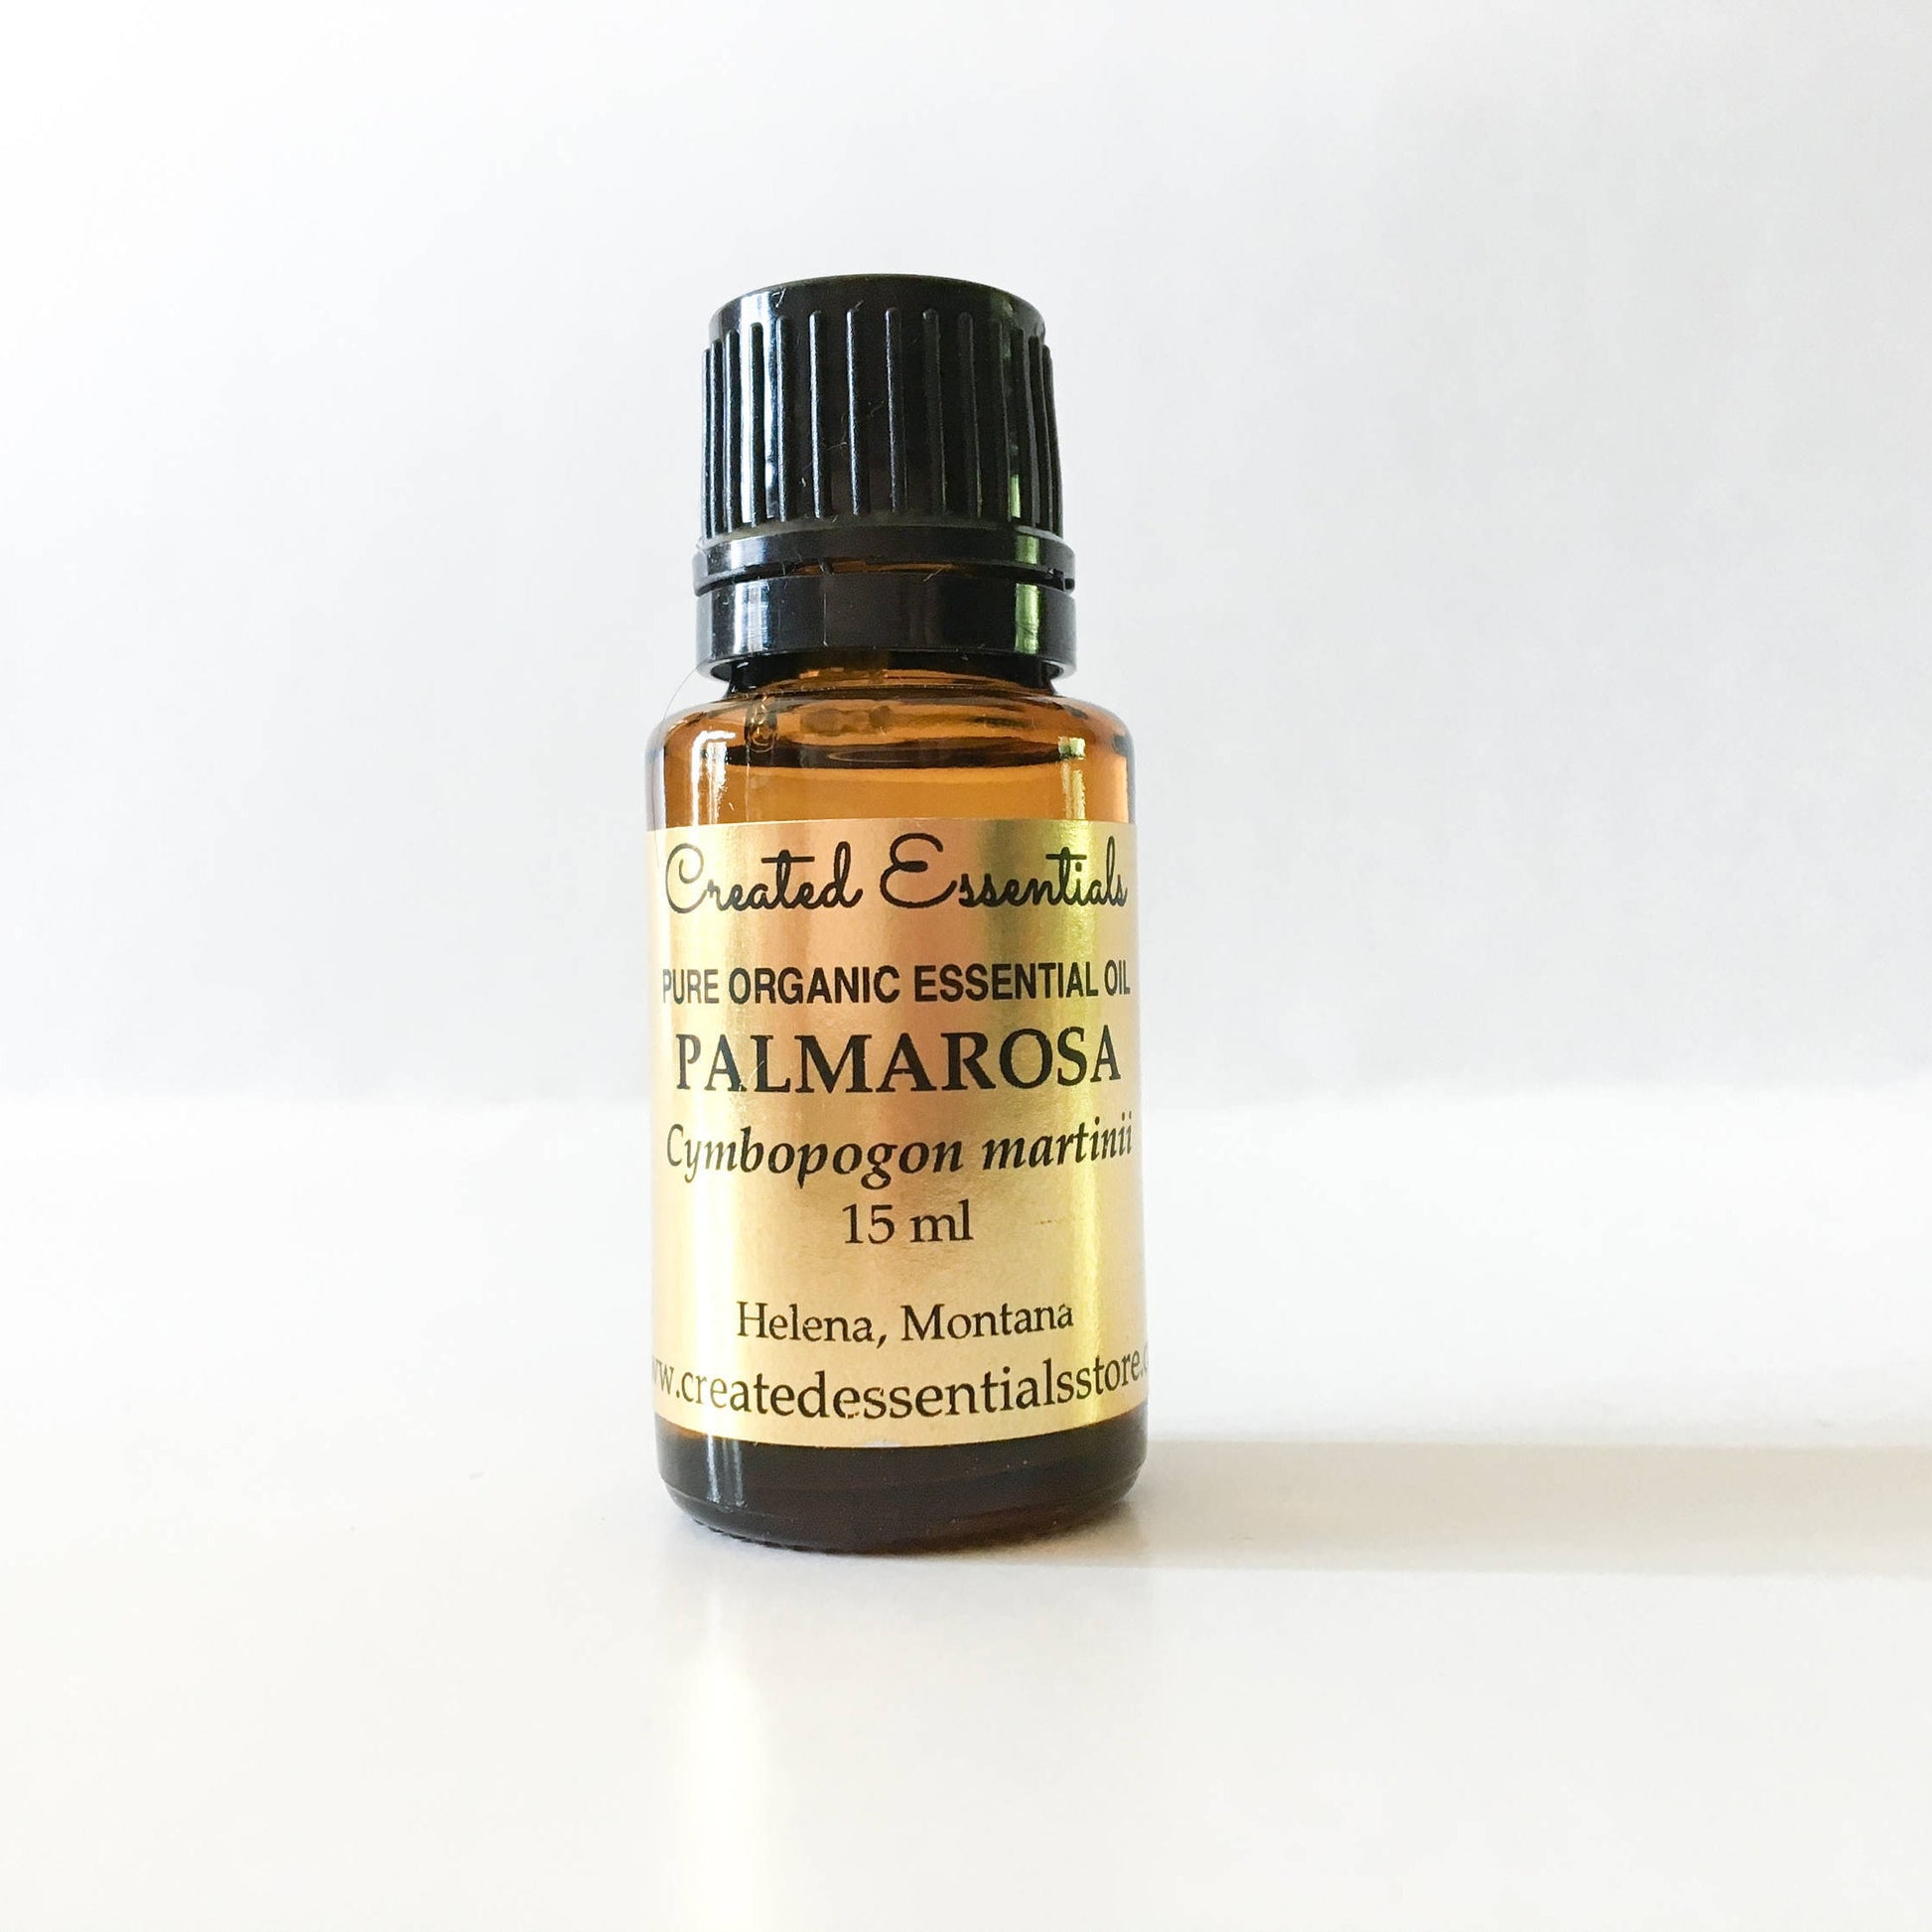 Palmarosa Essential Oil | Organic Essential Oil of Palmarosa | 100% Pure Essential Oil |Therapeutic Essential Oil of Palmarosa |Aromatherapy